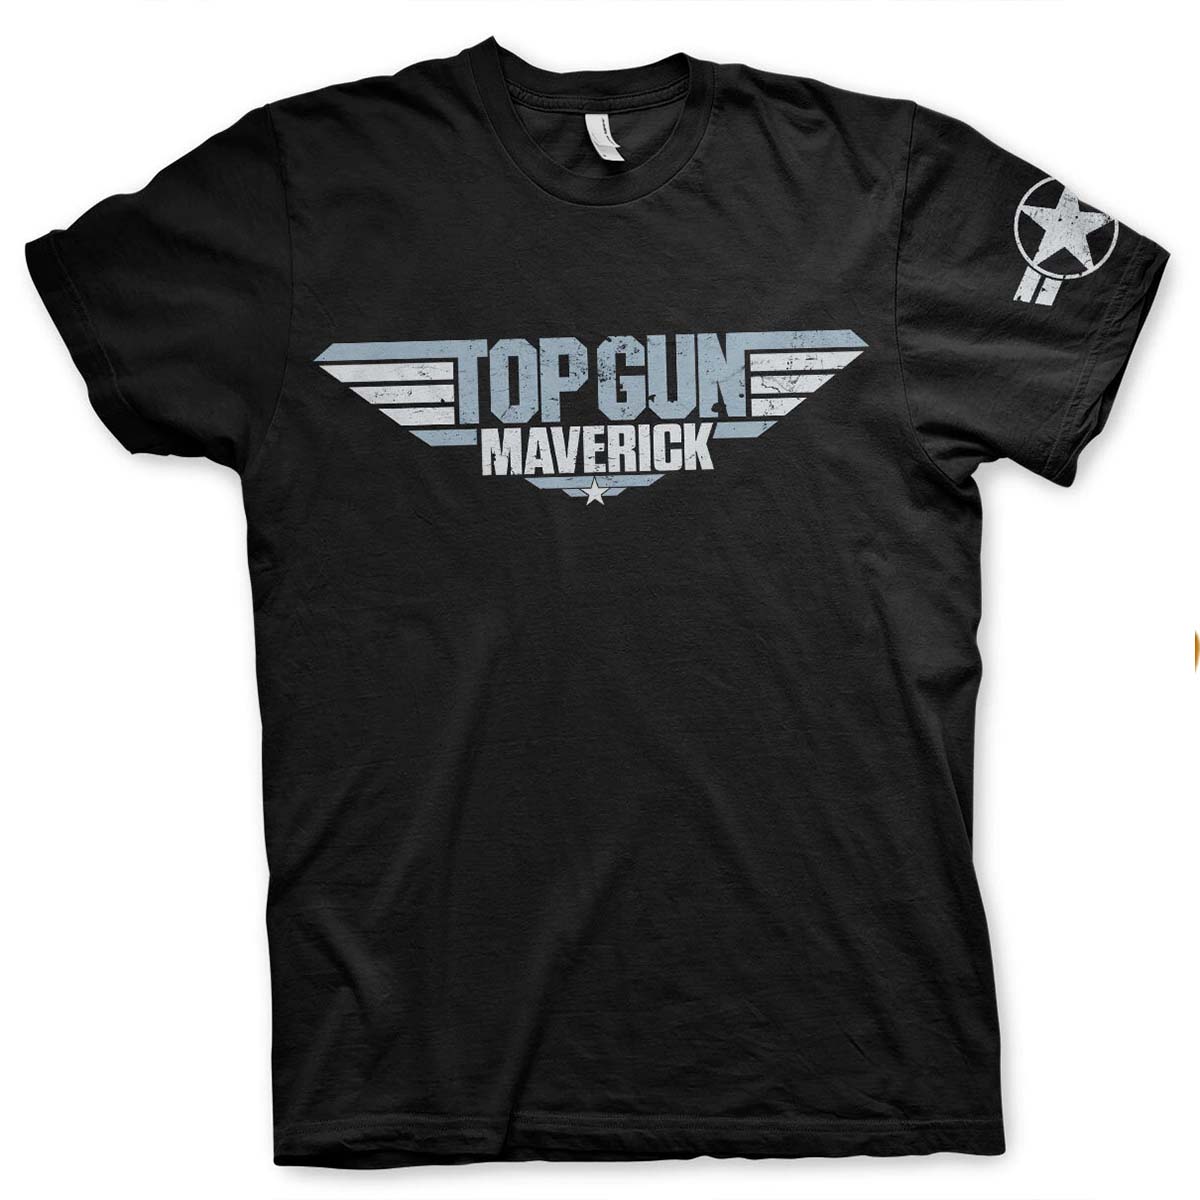 T-shirt, Top Gun Maverick S